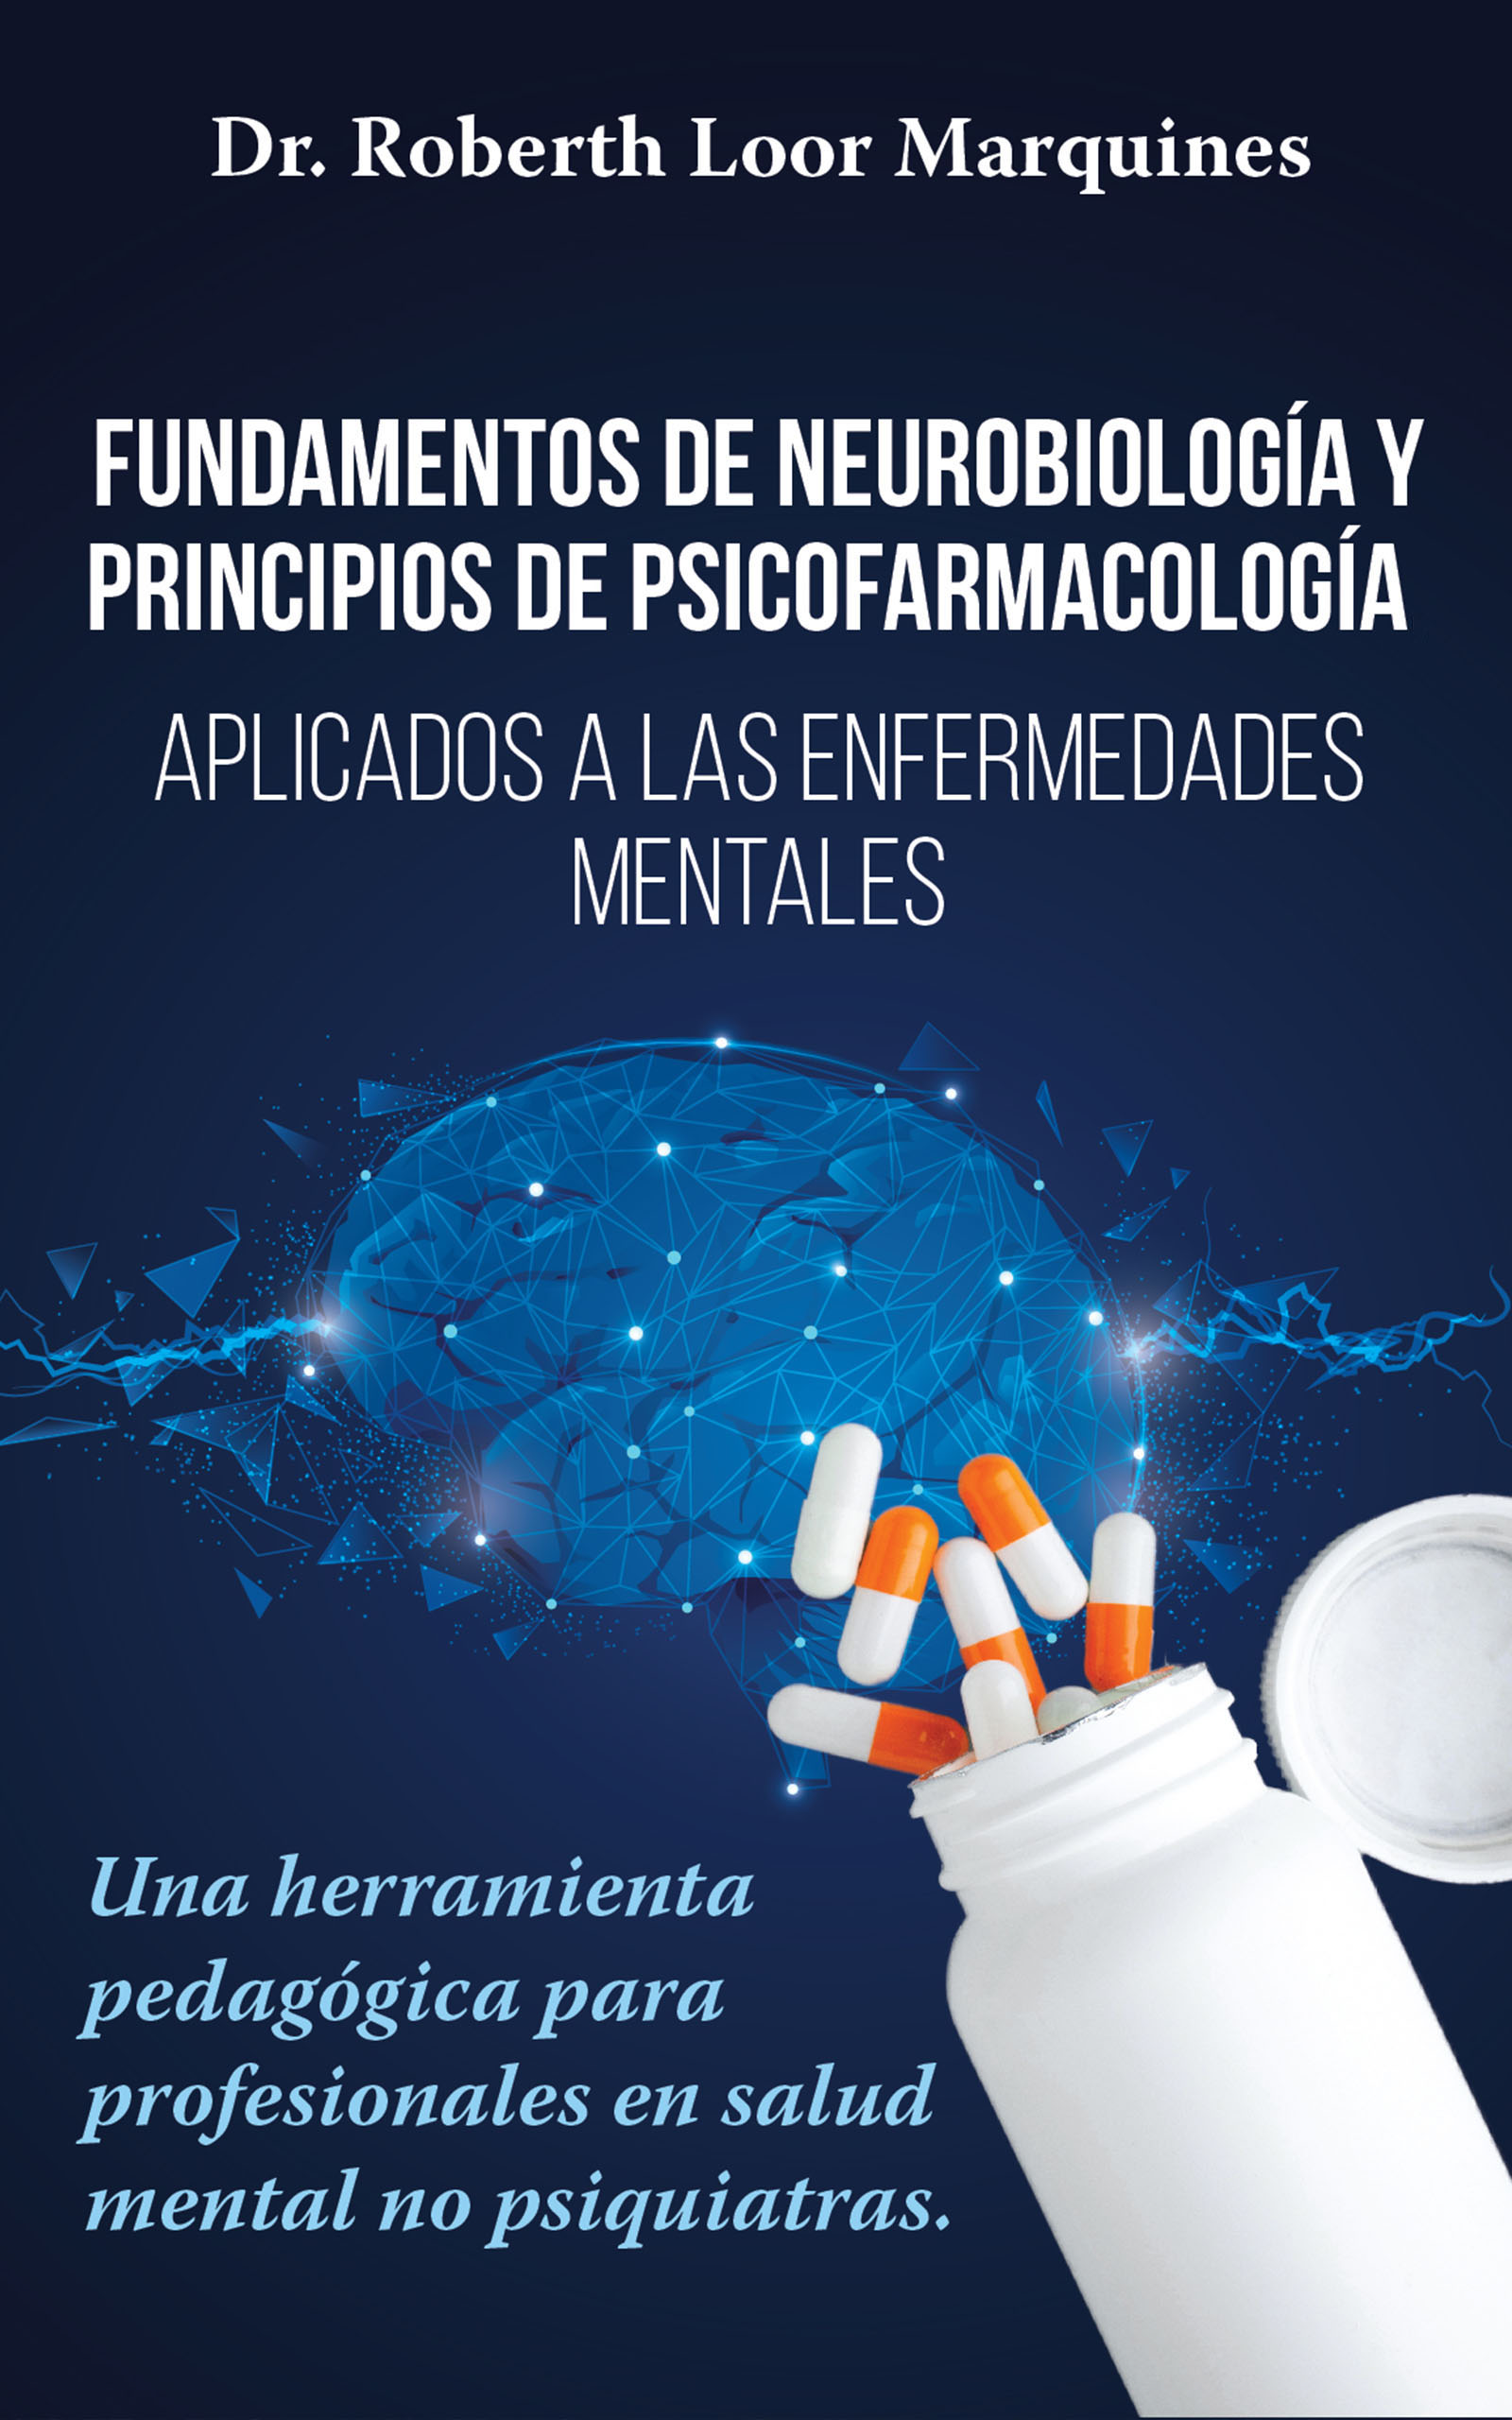 Fundamentos de la neurobiología y fundamentos de la psicofarmacología, de Dr. Roberth Loor Marquínes